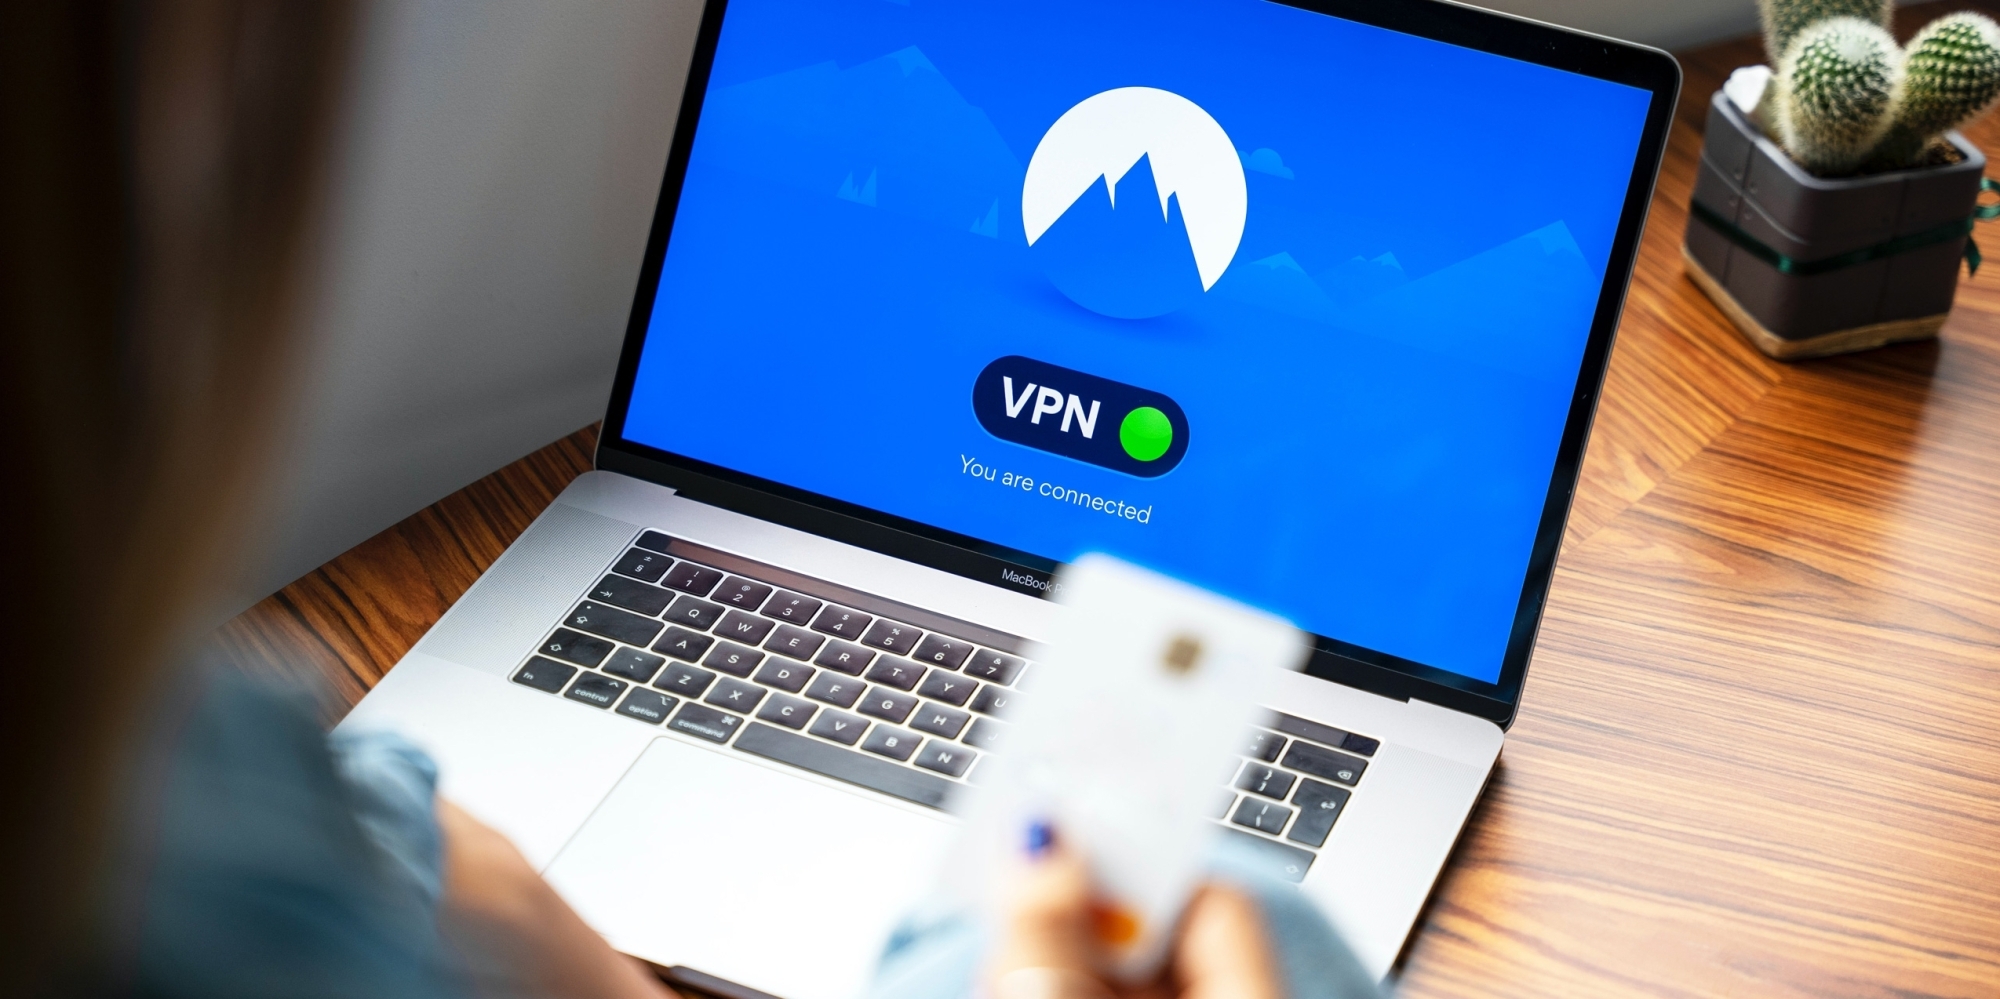 VPN - що це таке і навіщо його використовувати?